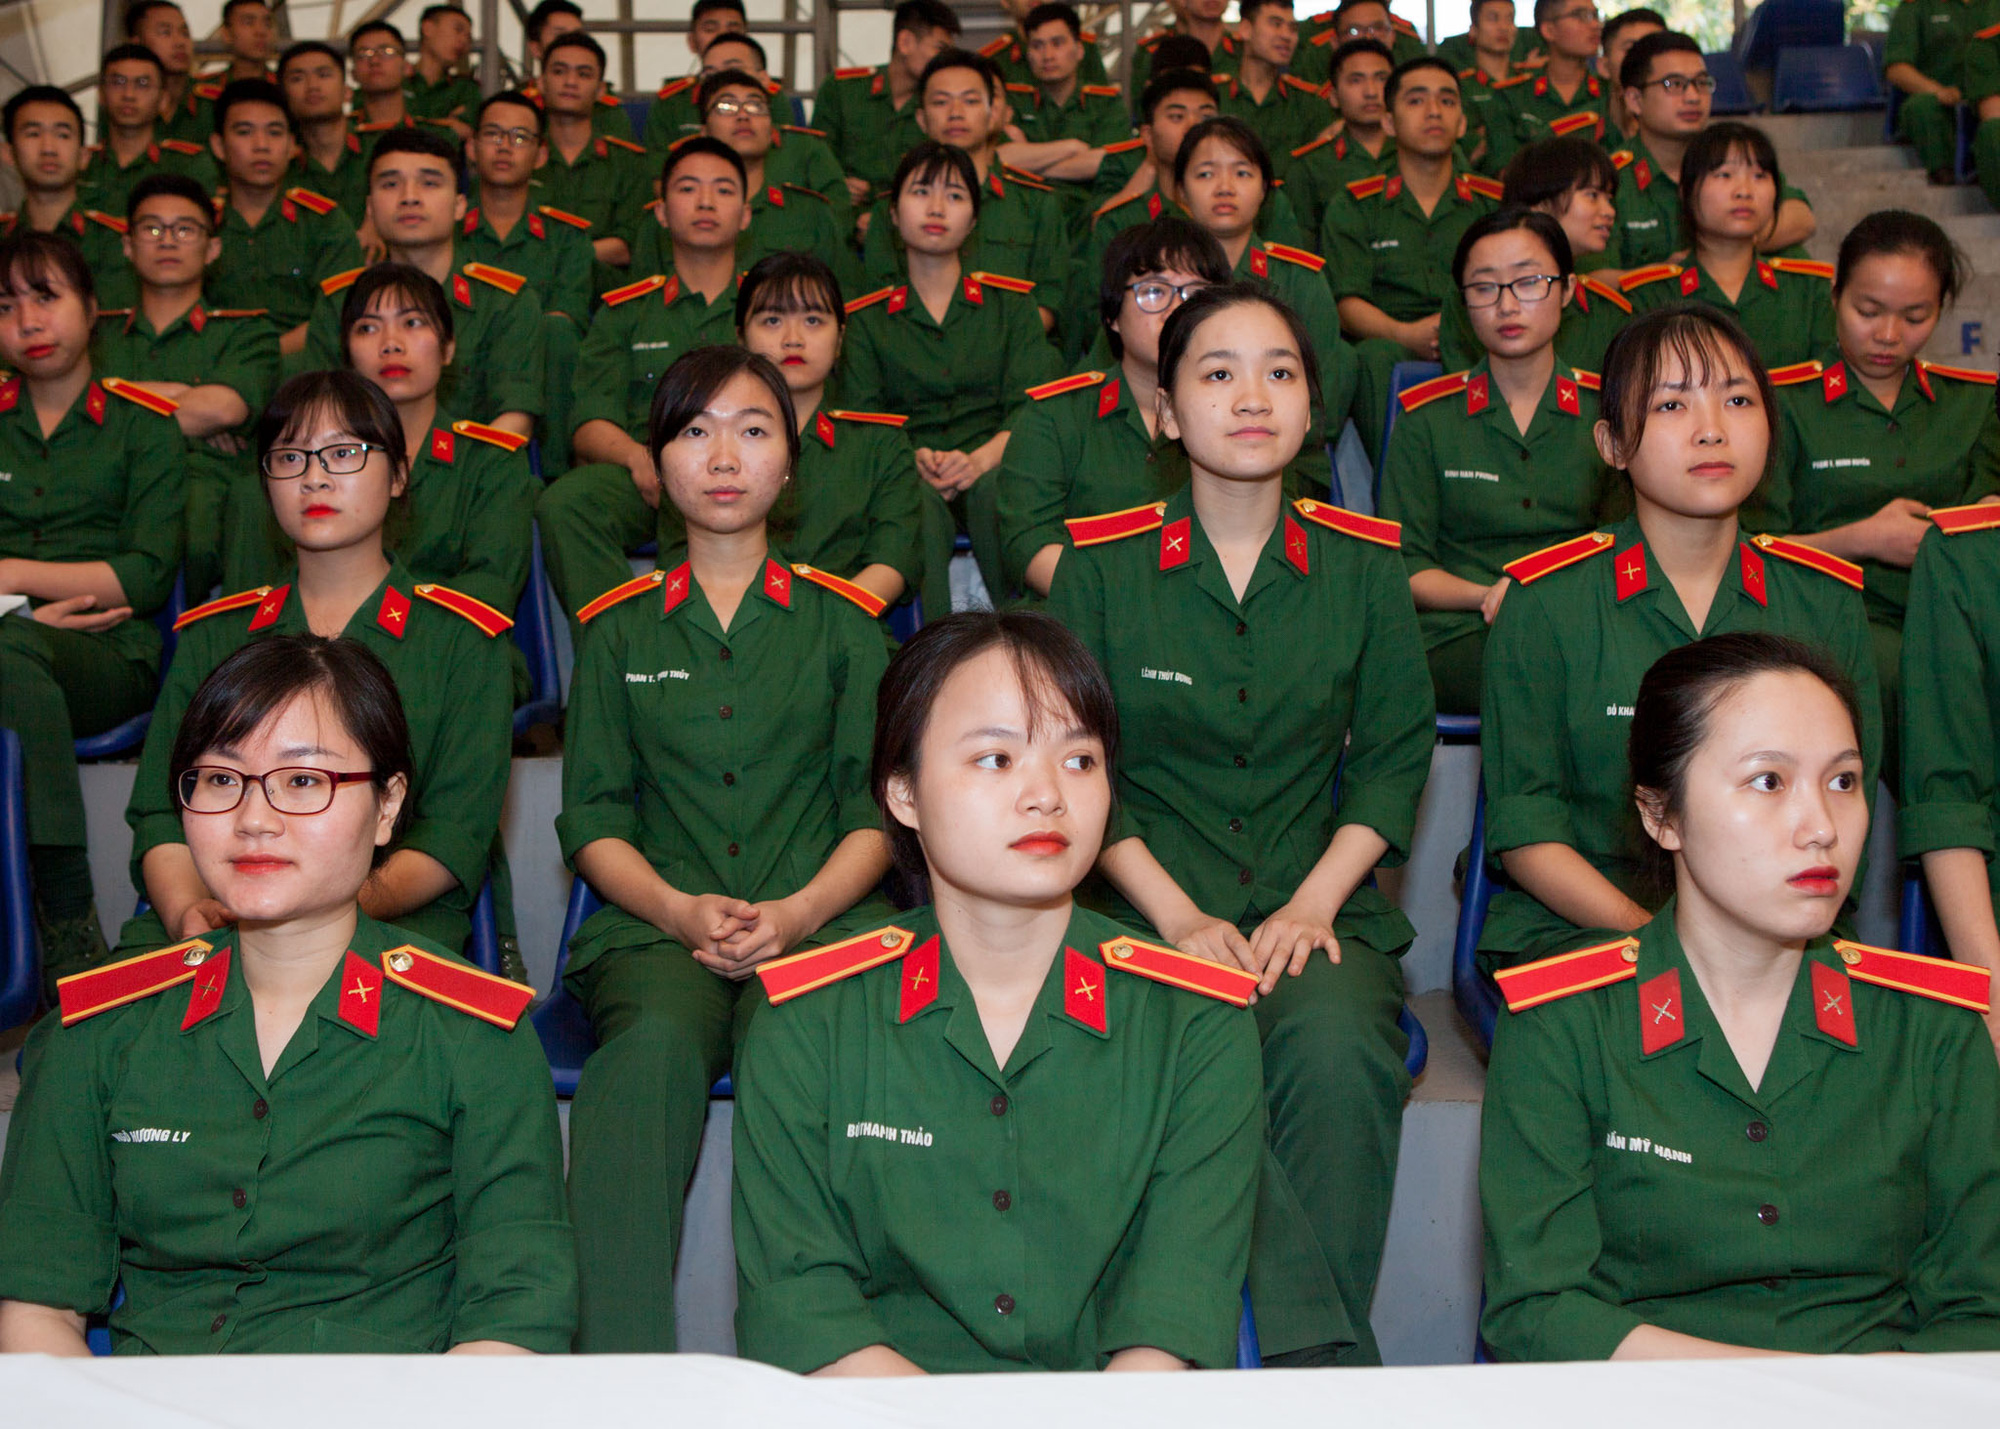 Tuyển sinh 2022 trường quân đội: Chỉ có 3 trường tuyển nữ - Ảnh 1.